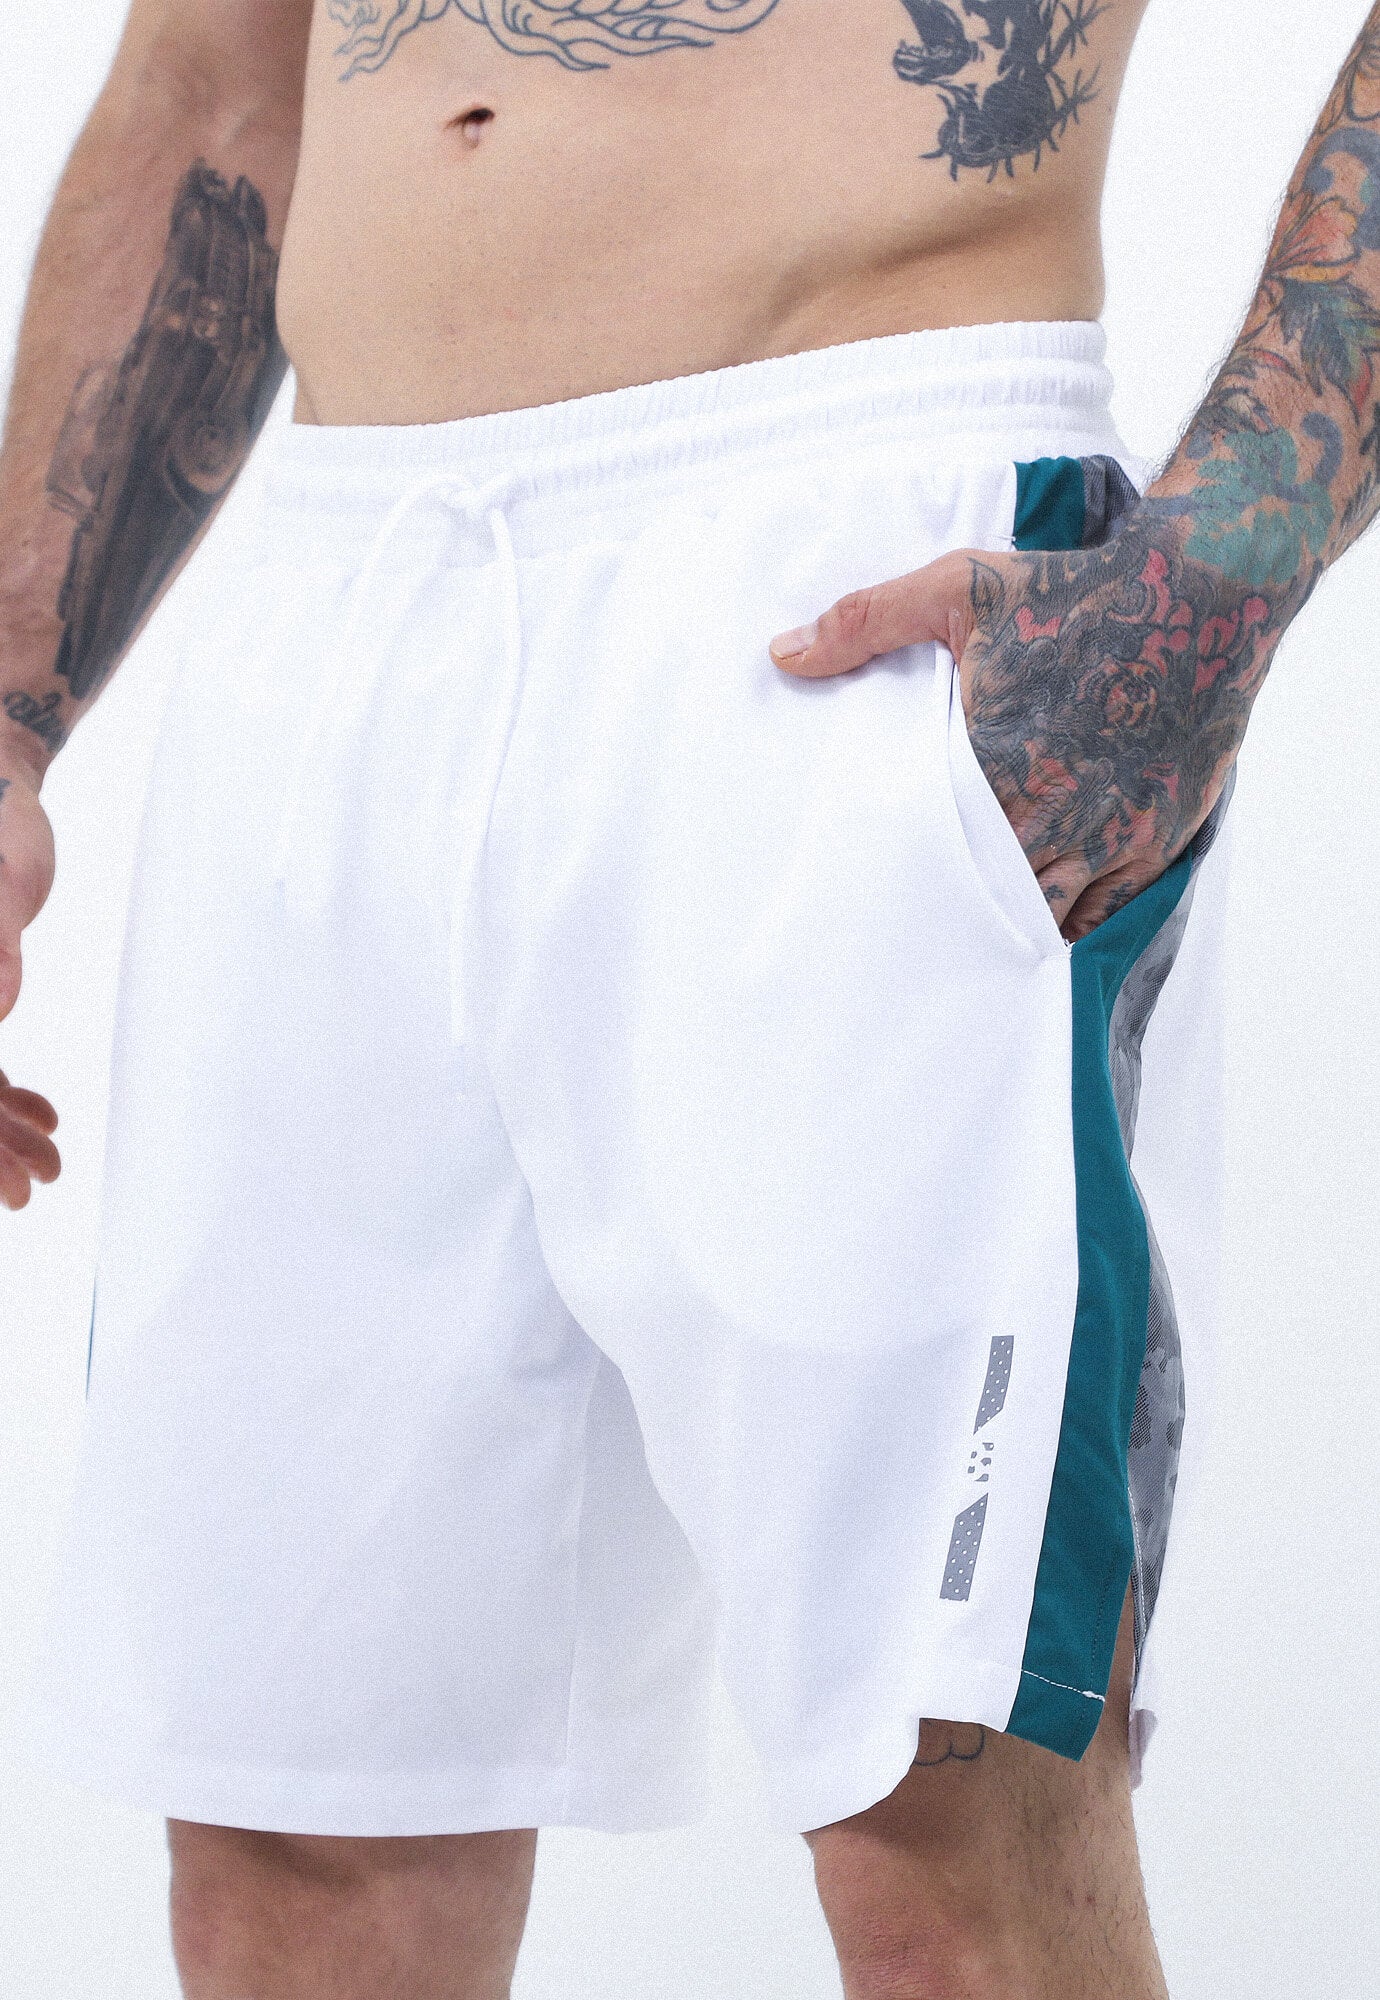 Pantaloneta deportiva blanco óptico bloques,con reflectivo y cordón ajustable, pretinda resorada y suspensorio para hombre